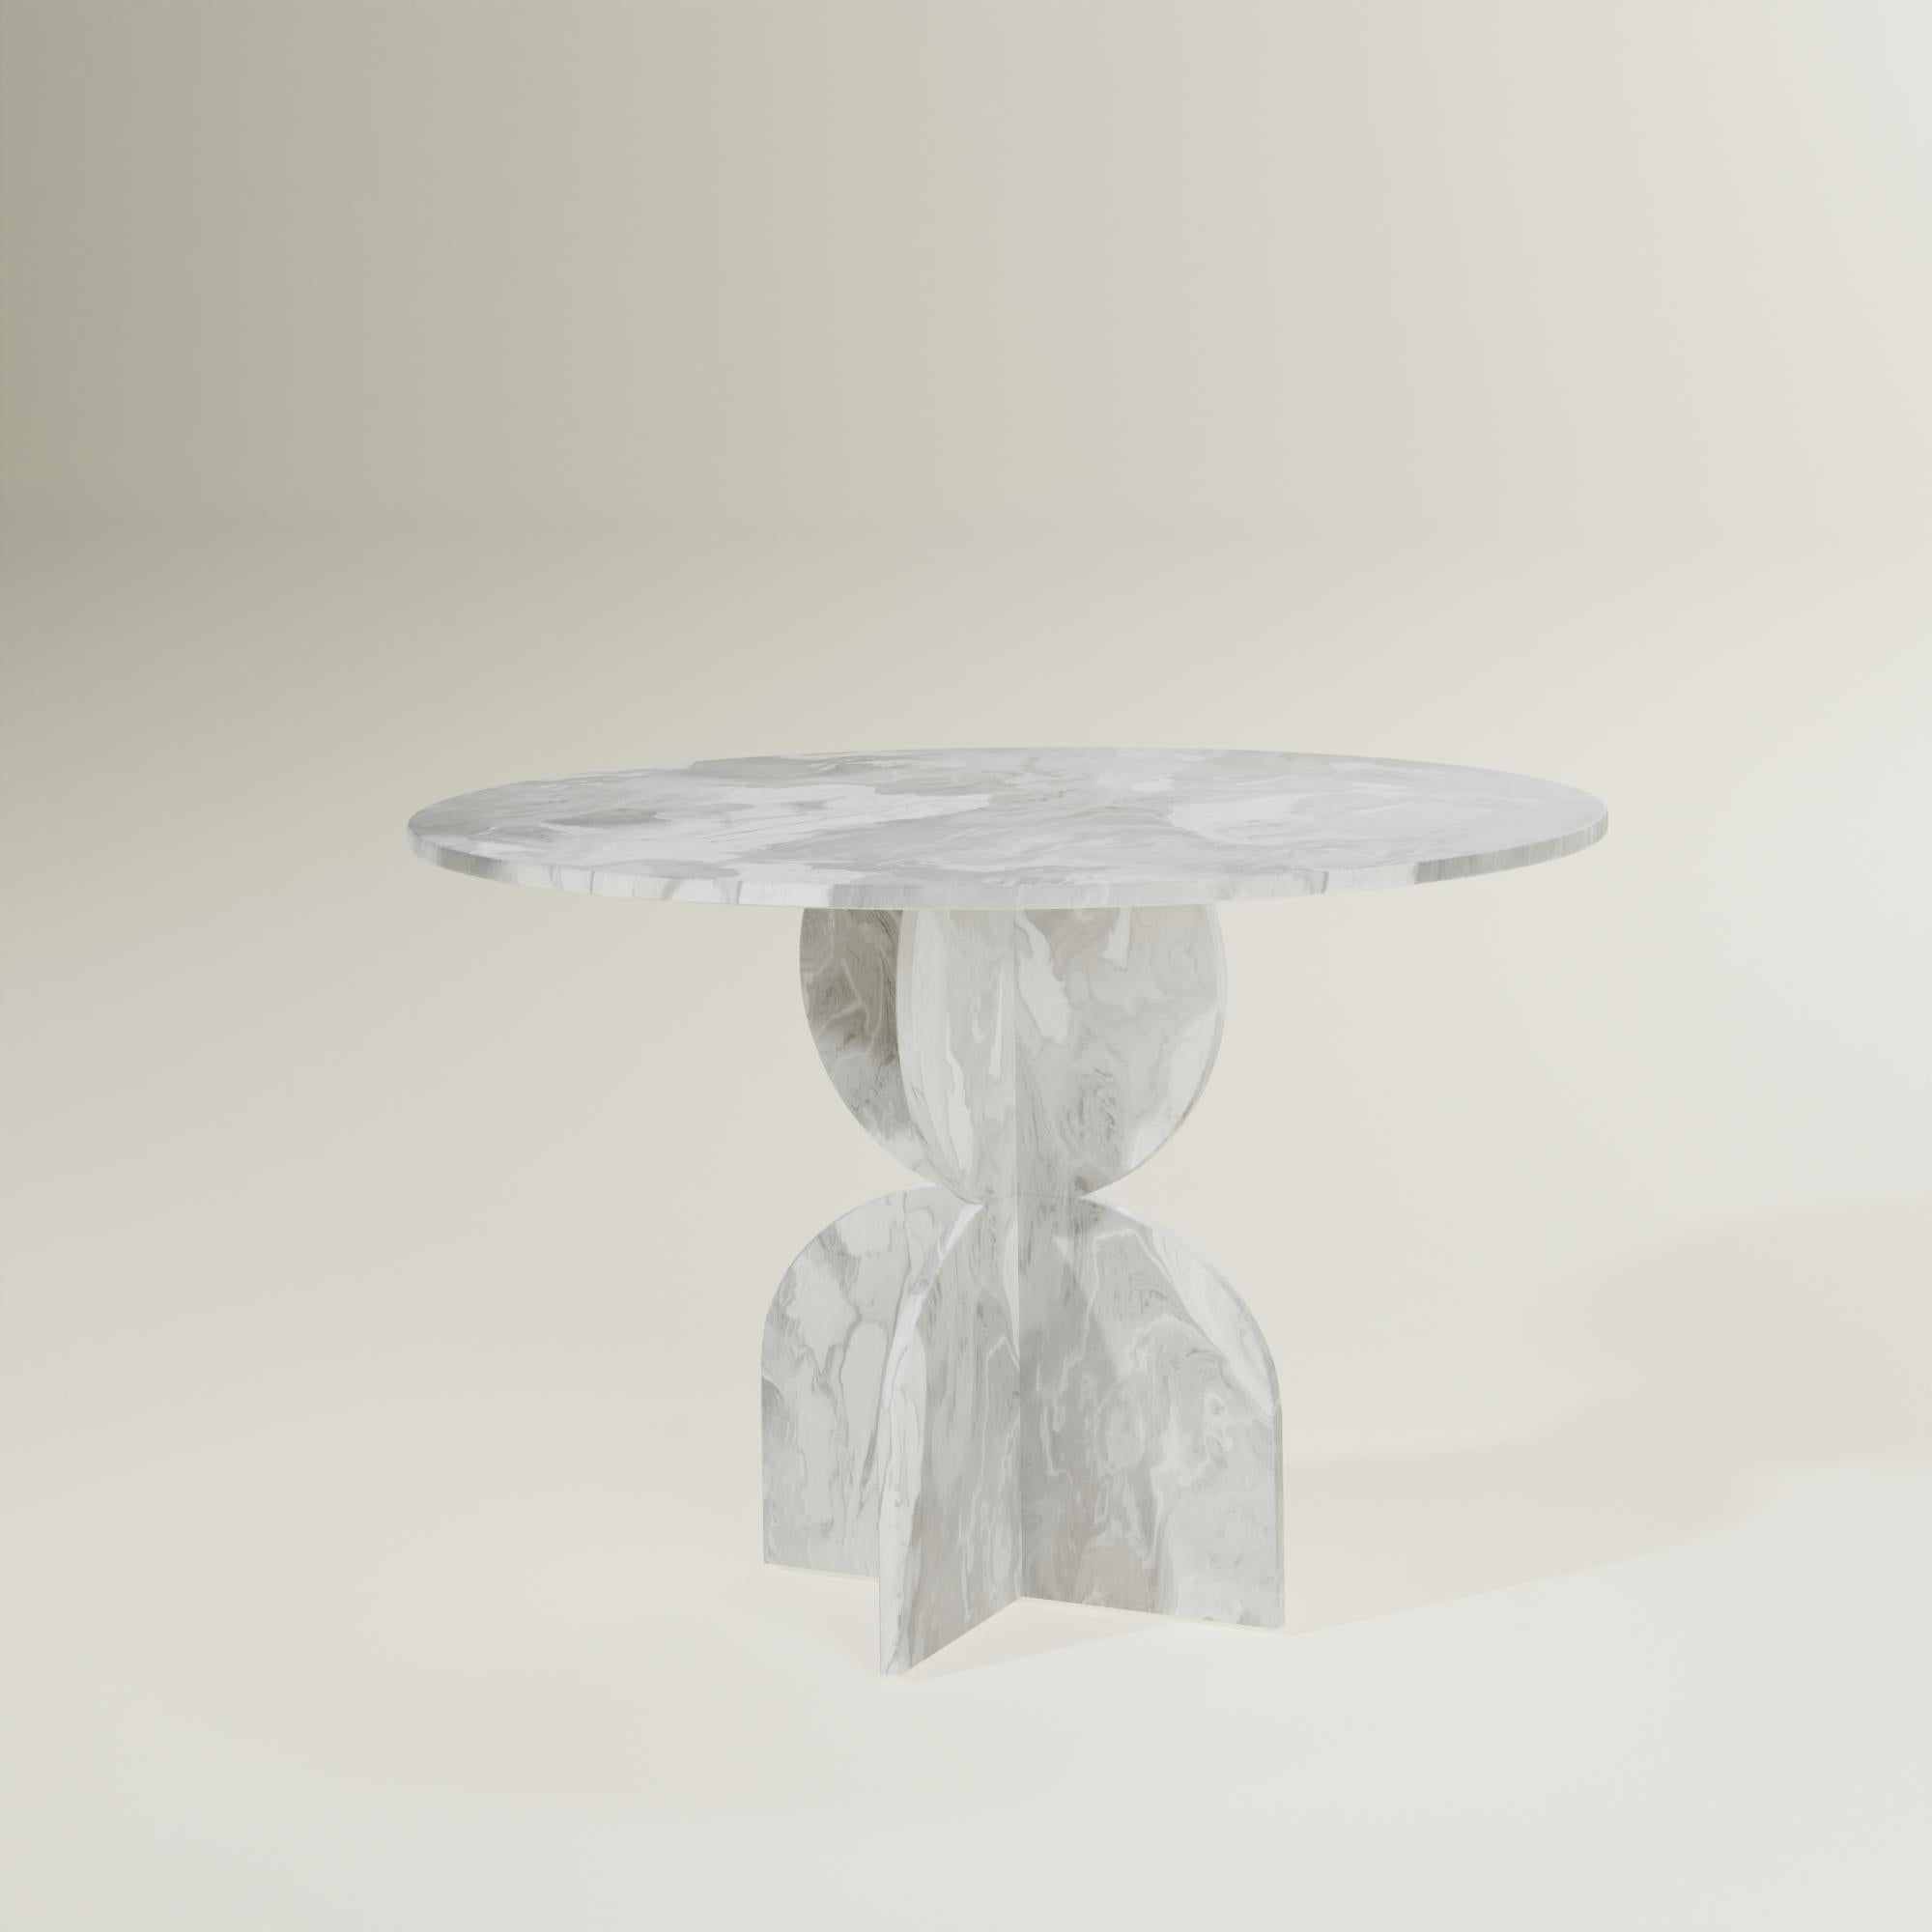 Table ronde blanche et grise contemporaine fabriquée à la main en plastique 100% recyclé par Anqa Studios
Des conversations incroyables ont lieu autour de tables incroyables. La table ronde ANQA Studios est une table de forme géométrique dont le